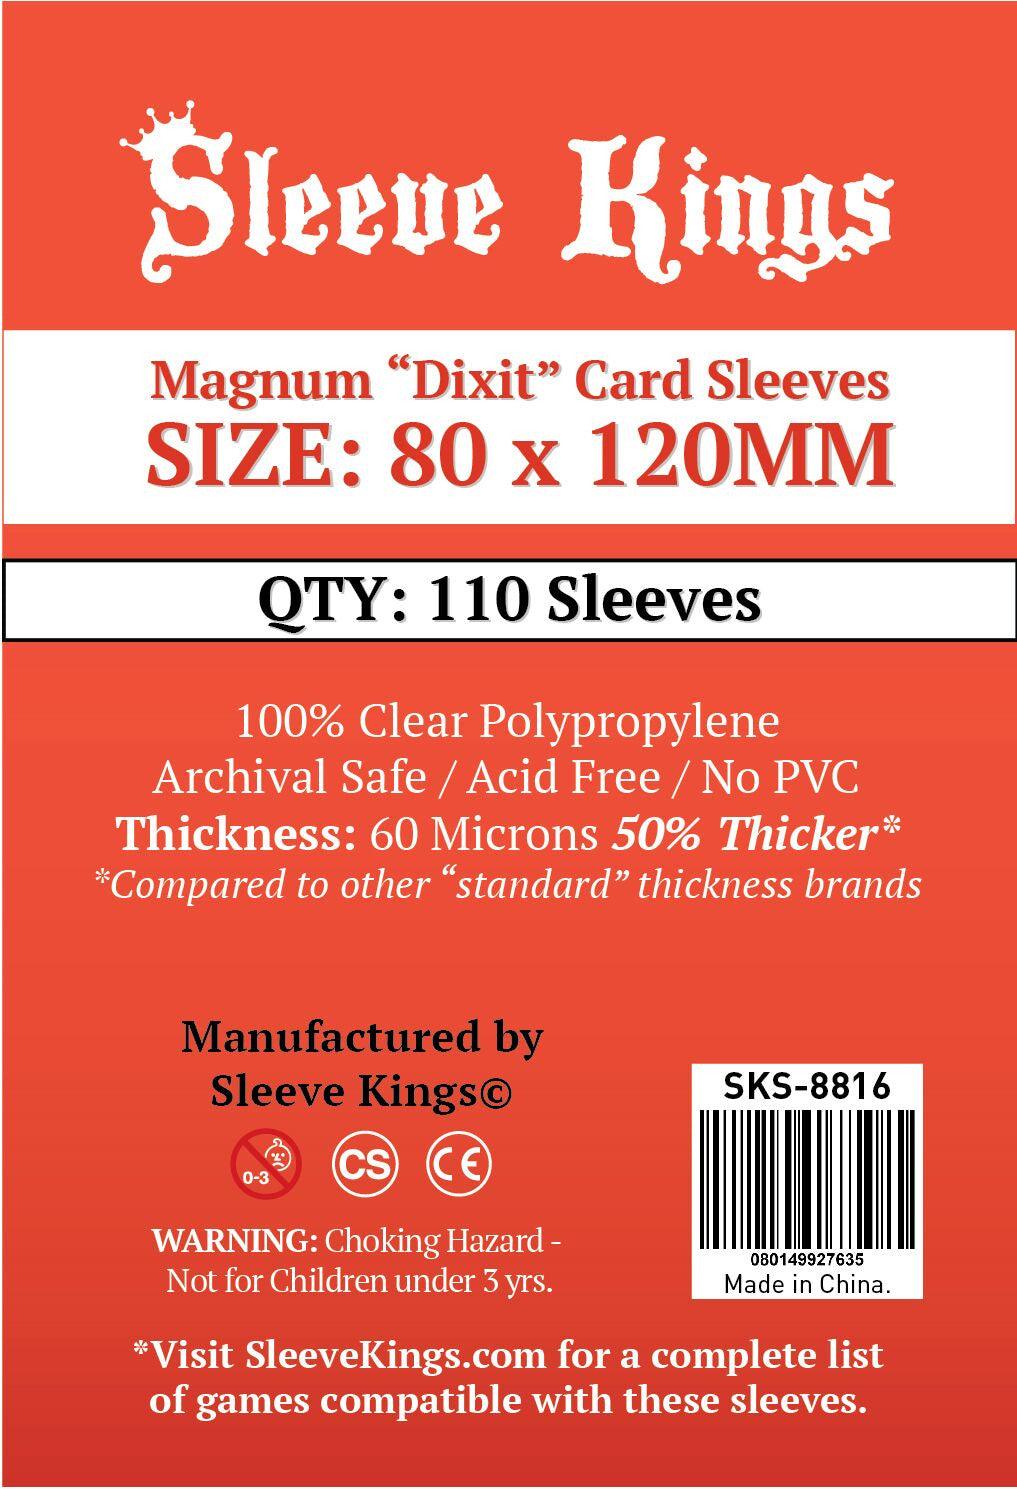 VR-67716 Sleeve Kings Board Game Sleeves Magnum "Dixit" (80mm x 120mm) (110 Sleeves Per Pack) - Sleeve Kings - Titan Pop Culture